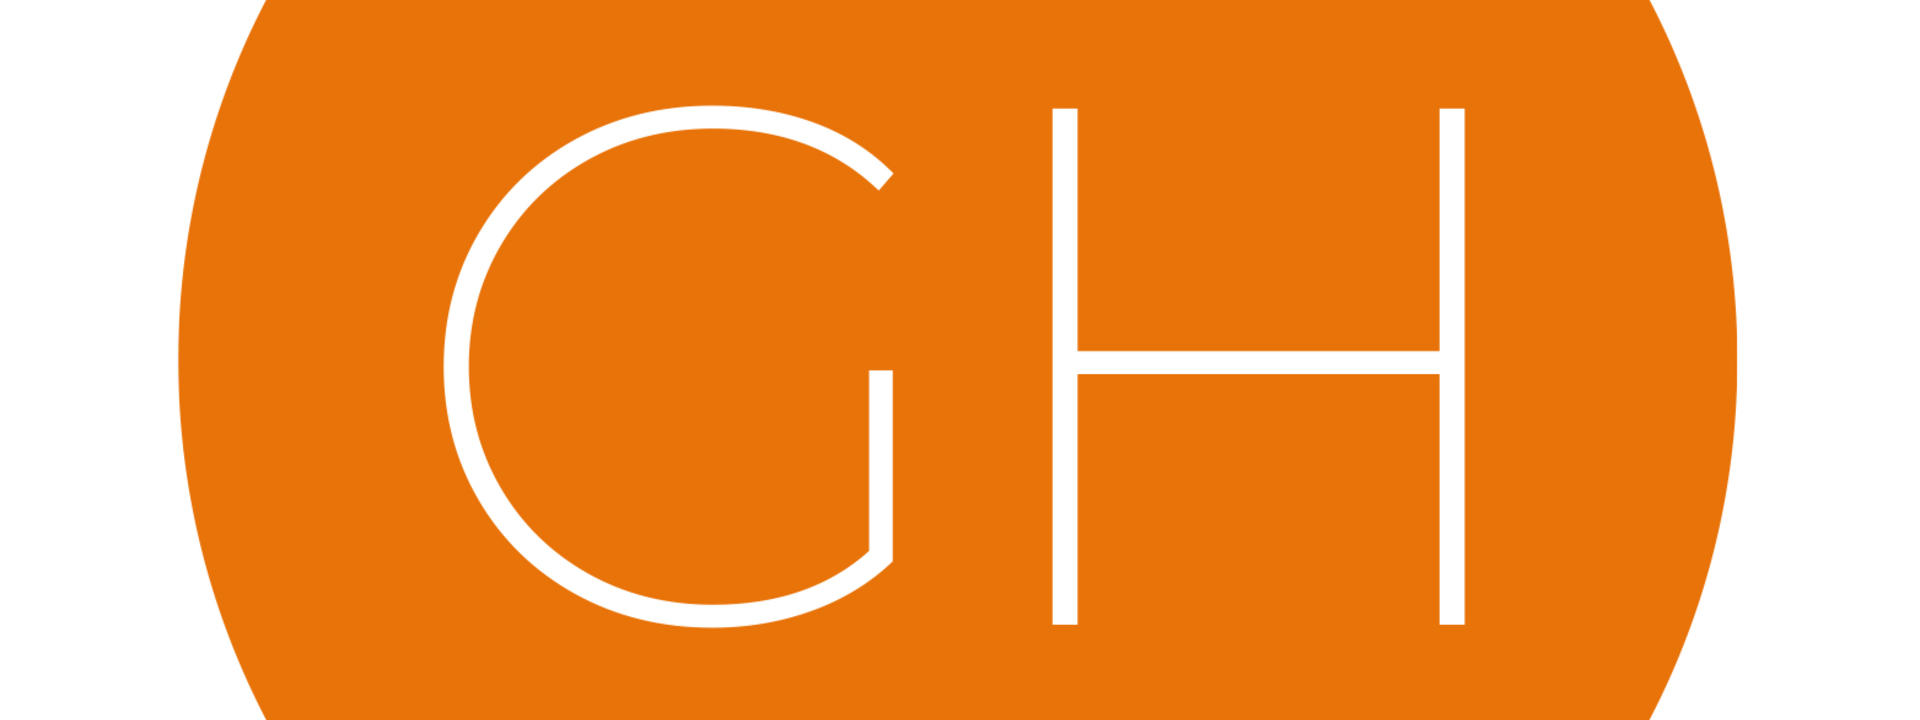 glen-howey-logo.jpg